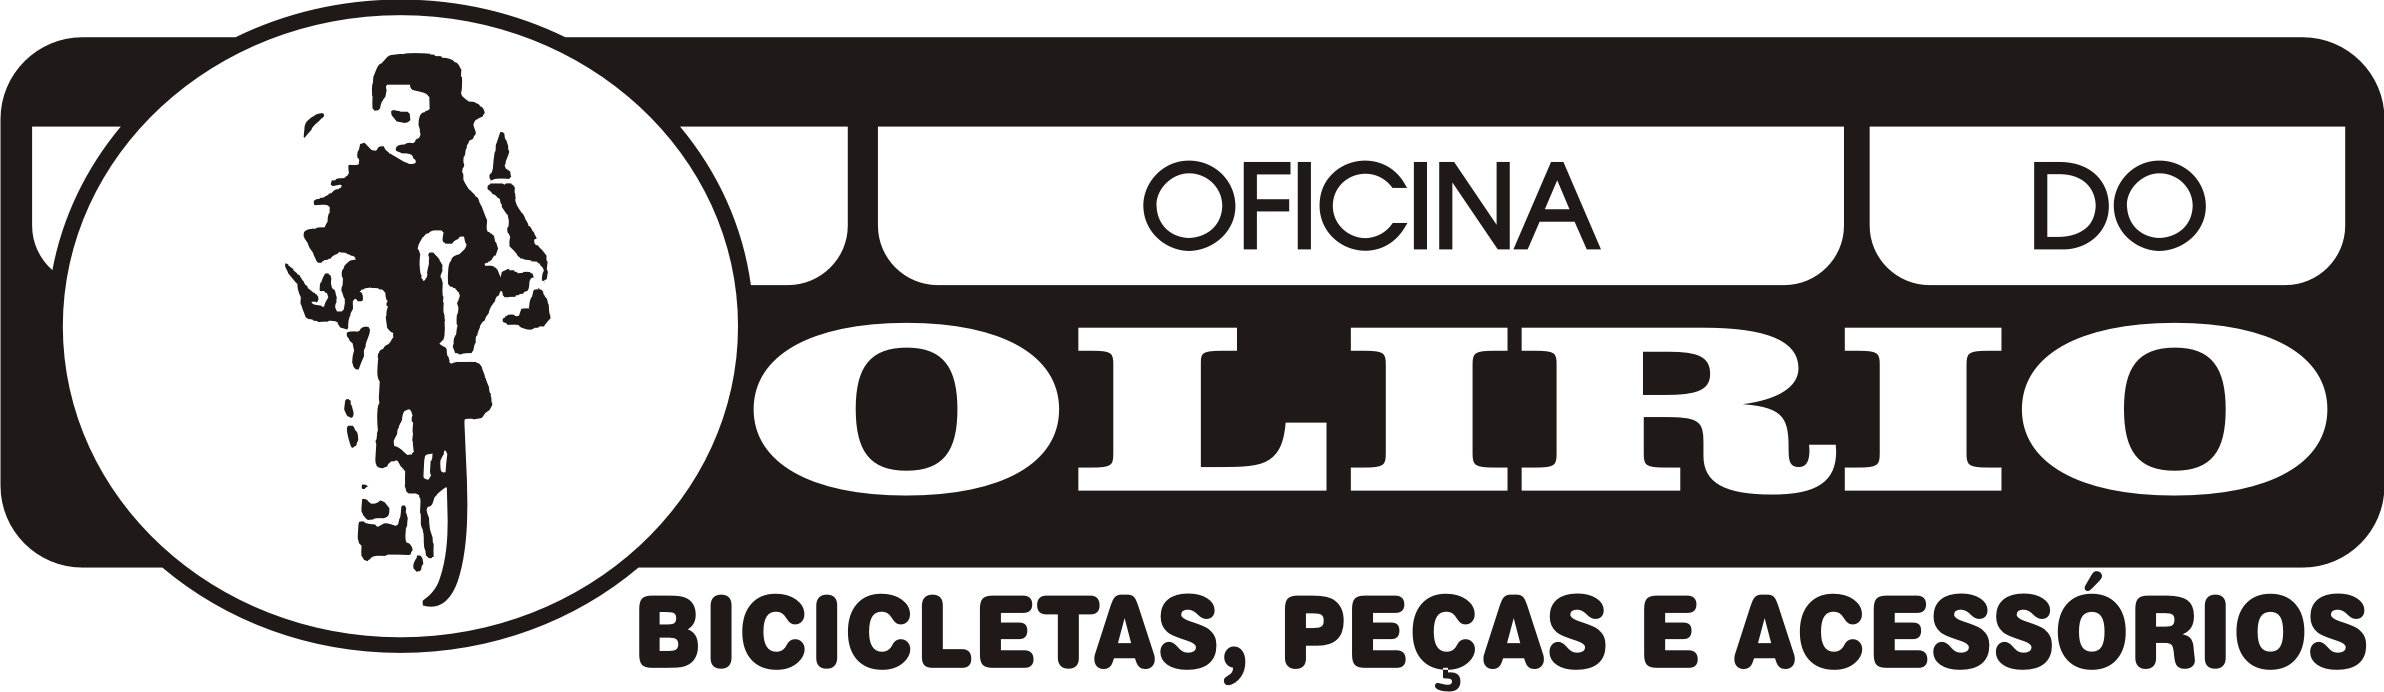 Oficina de Bicicletas Olirio - Logotipo